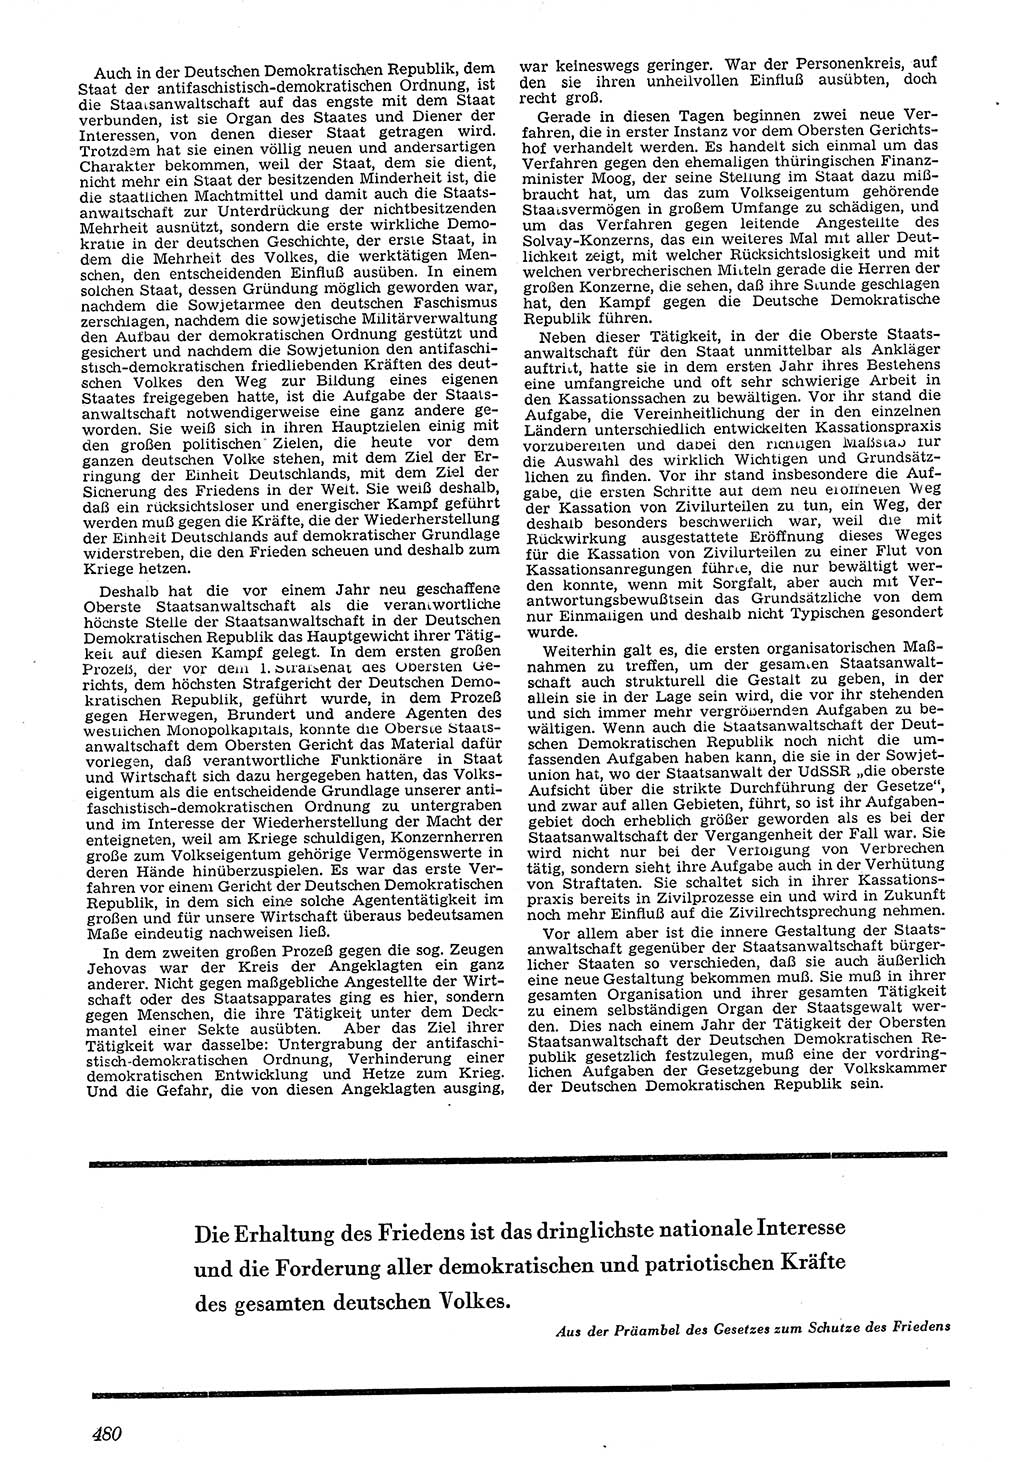 Neue Justiz (NJ), Zeitschrift für Recht und Rechtswissenschaft [Deutsche Demokratische Republik (DDR)], 4. Jahrgang 1950, Seite 480 (NJ DDR 1950, S. 480)